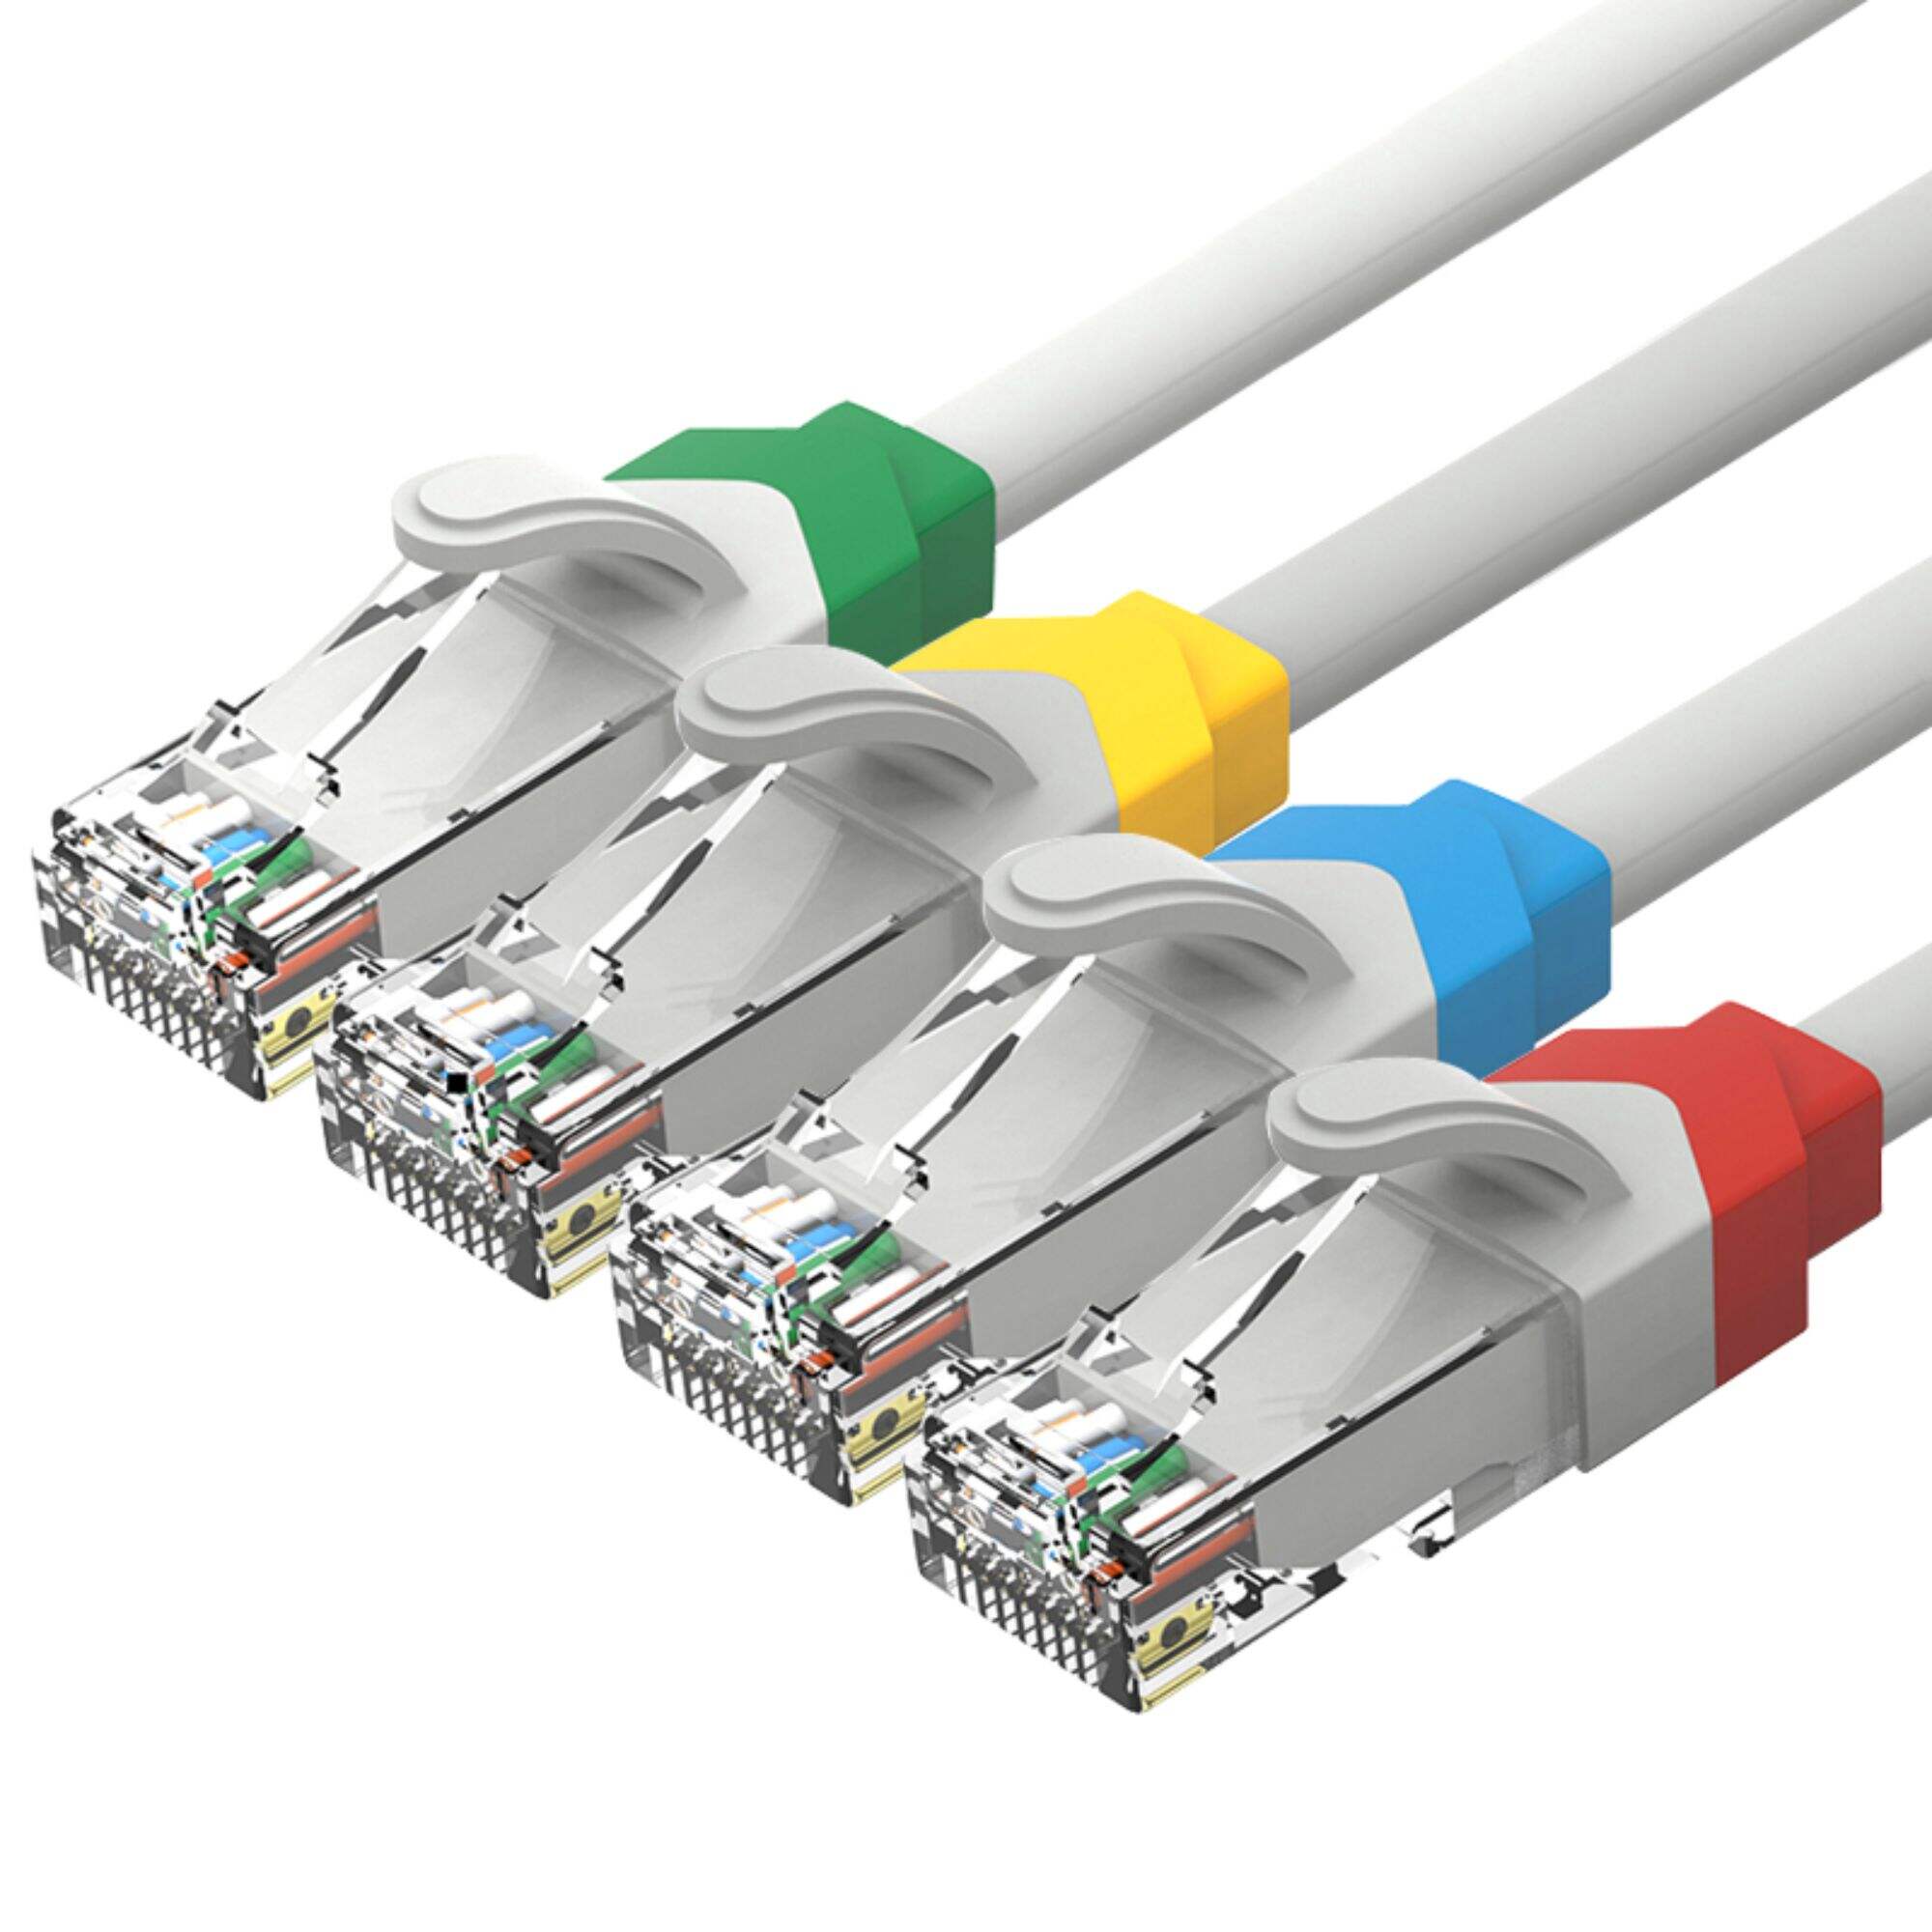 Datora izmantošana RJ45 savienotājs Ethernet kabelis Utp Ftp 1m 2m 3m 5m 1m-50m Cat5e Cat6 Cat6a plākstera kabelis UTP plākstera vads rj45 kabelis